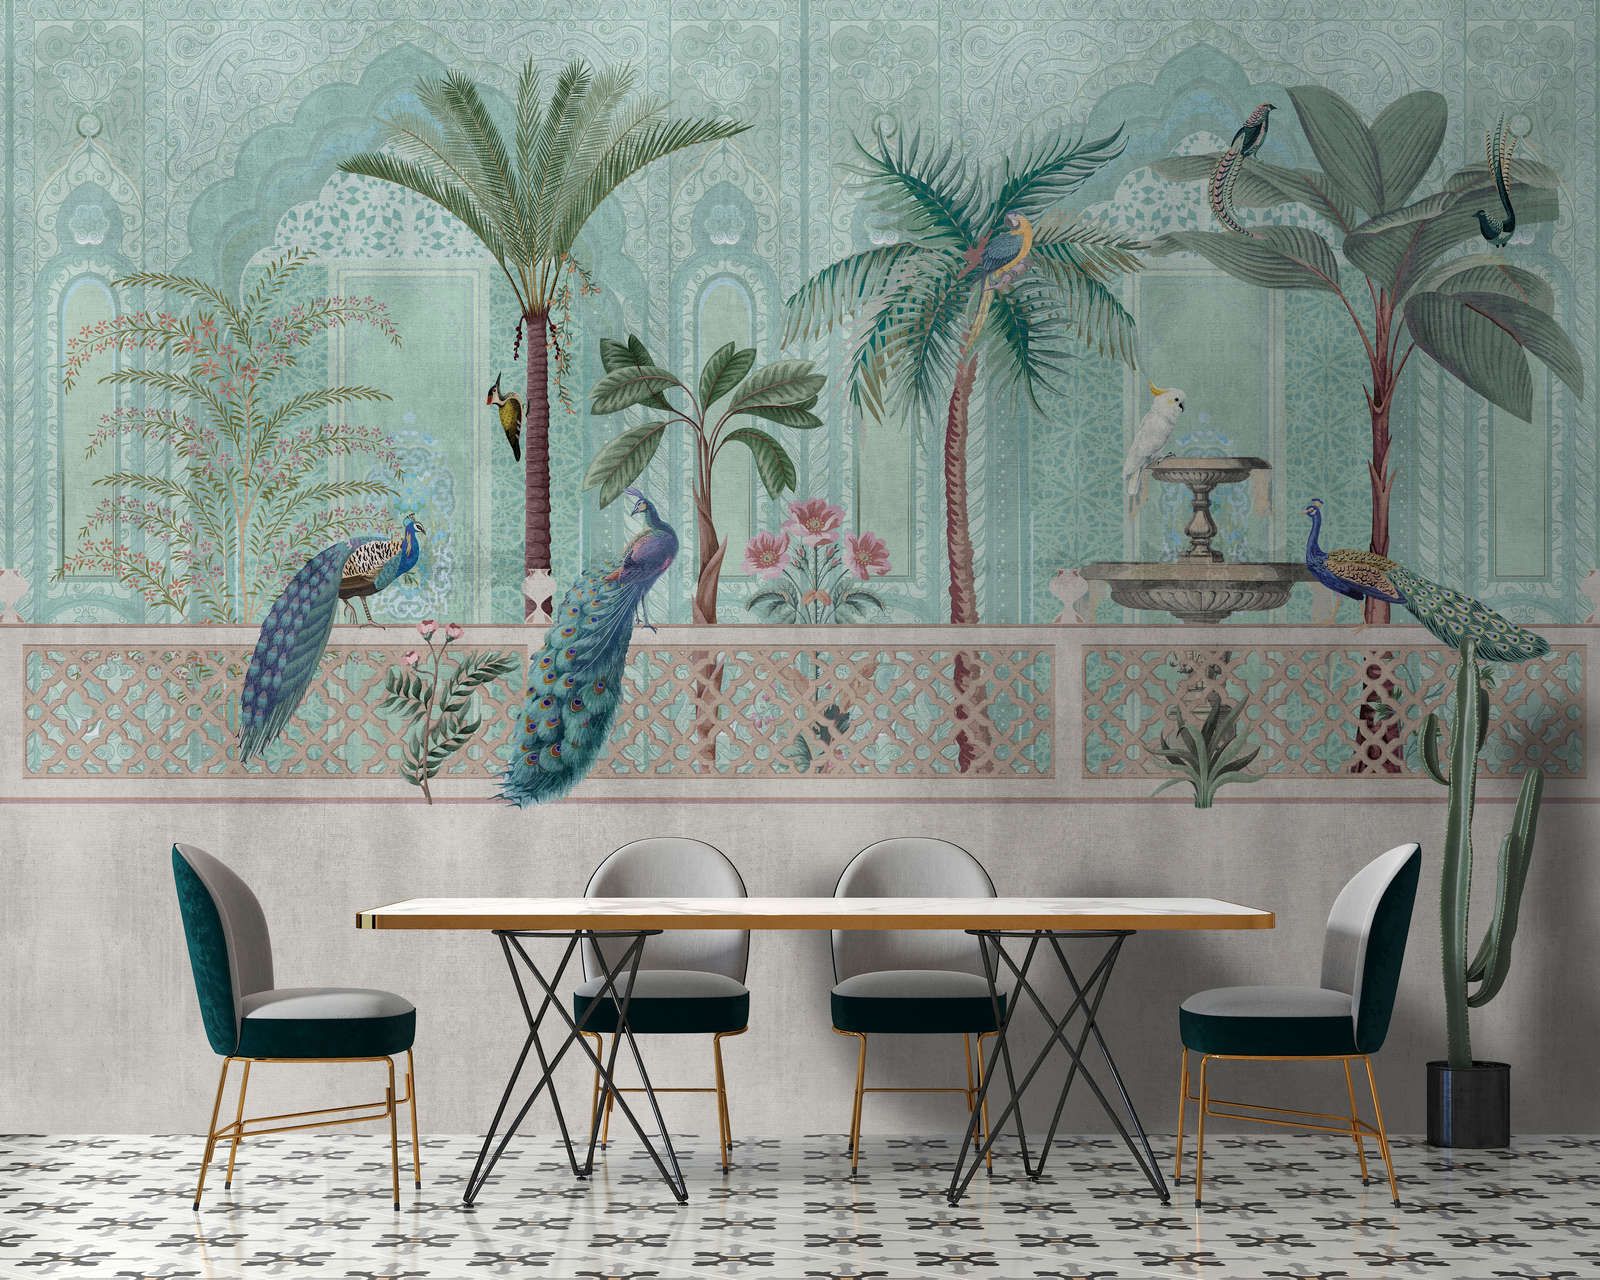             Fotomural »pavo« - Pájaros, palmeras y fuentes - Verde, azul con estructura de tapiz | no tejido mate, liso
        